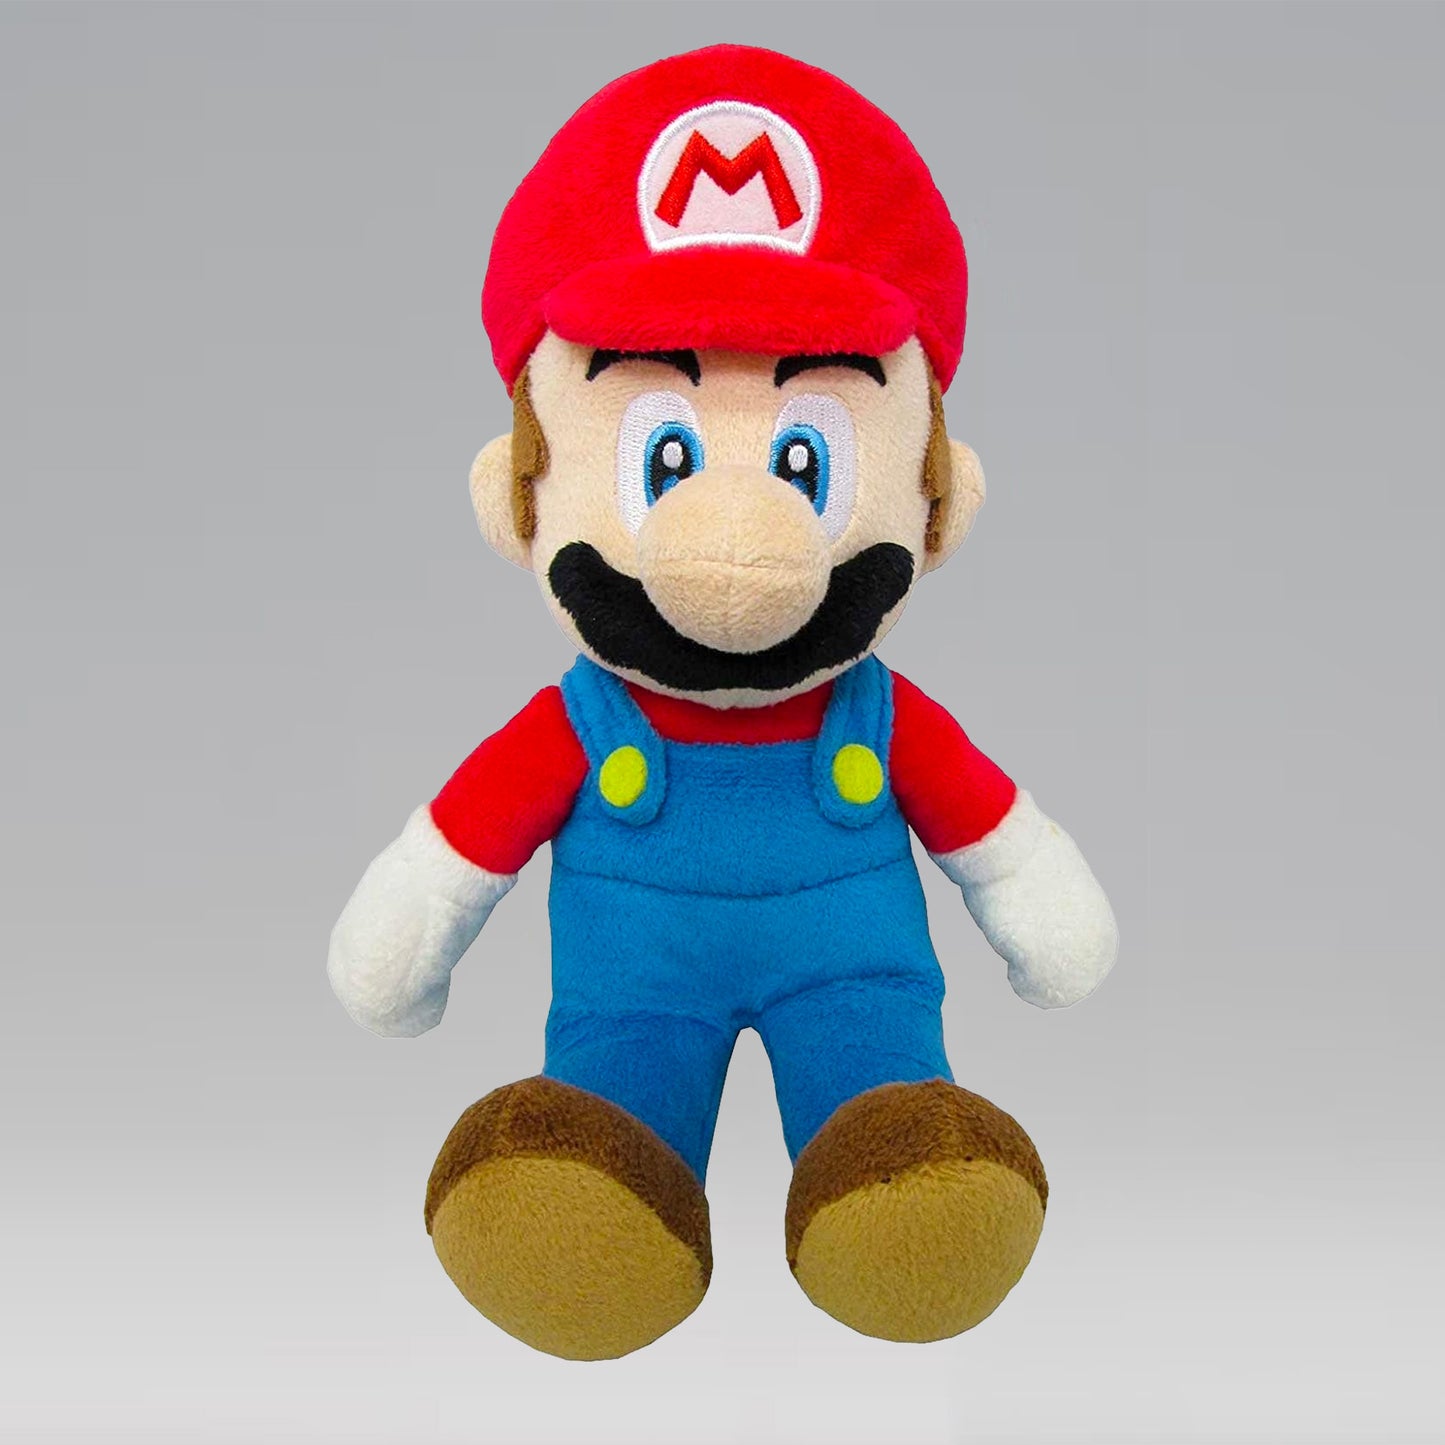 Mario Nintendo All Star Collection Plush